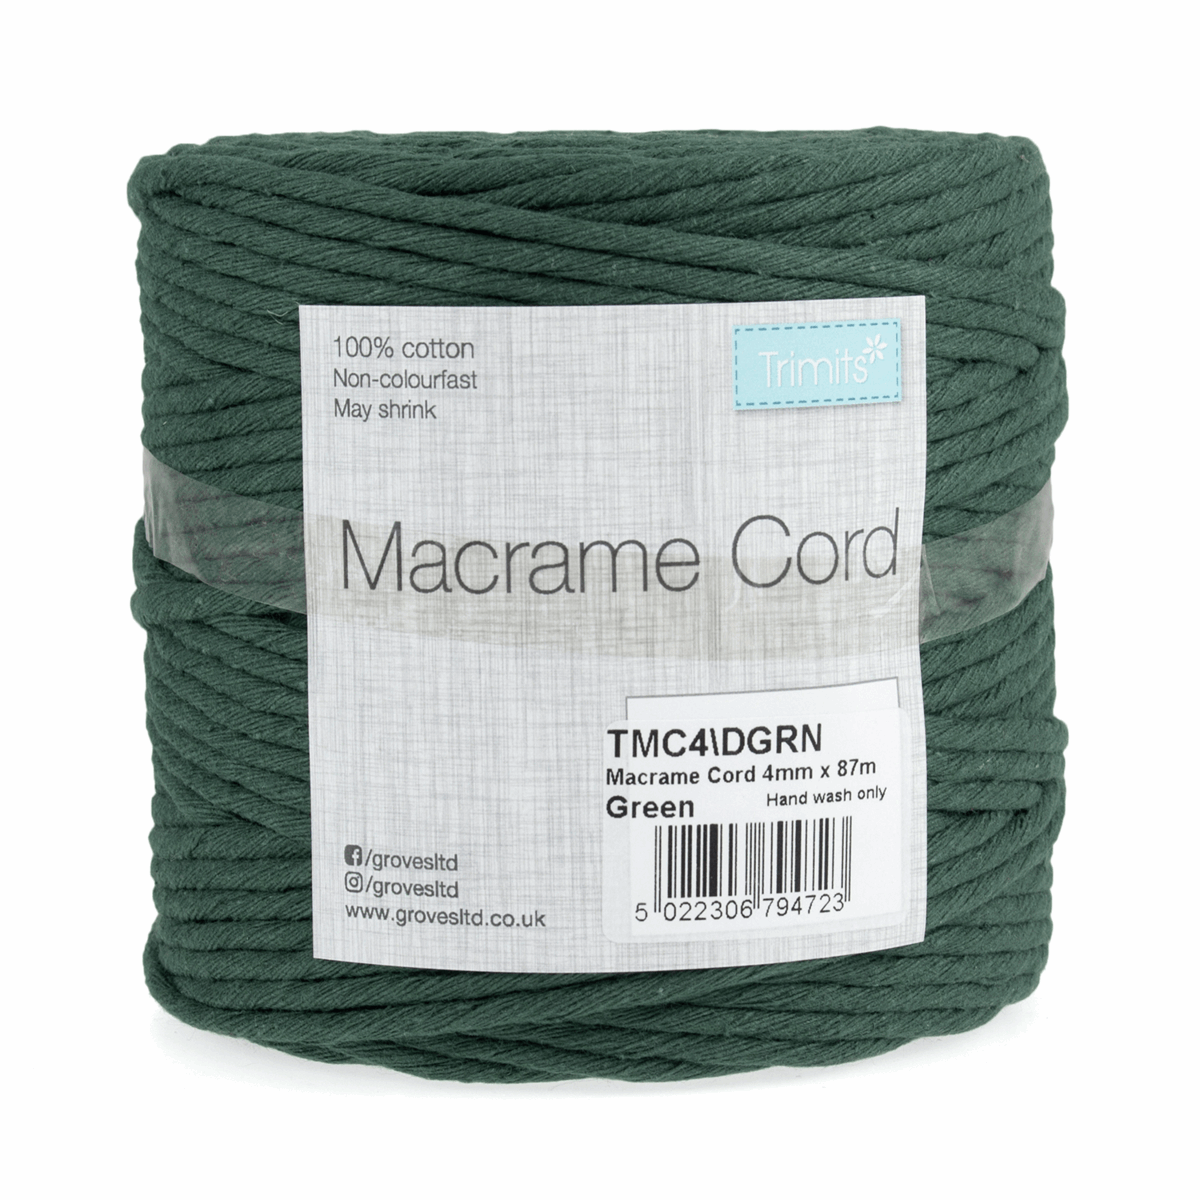 Dark Green Macrame Cord - 87m x 4mm